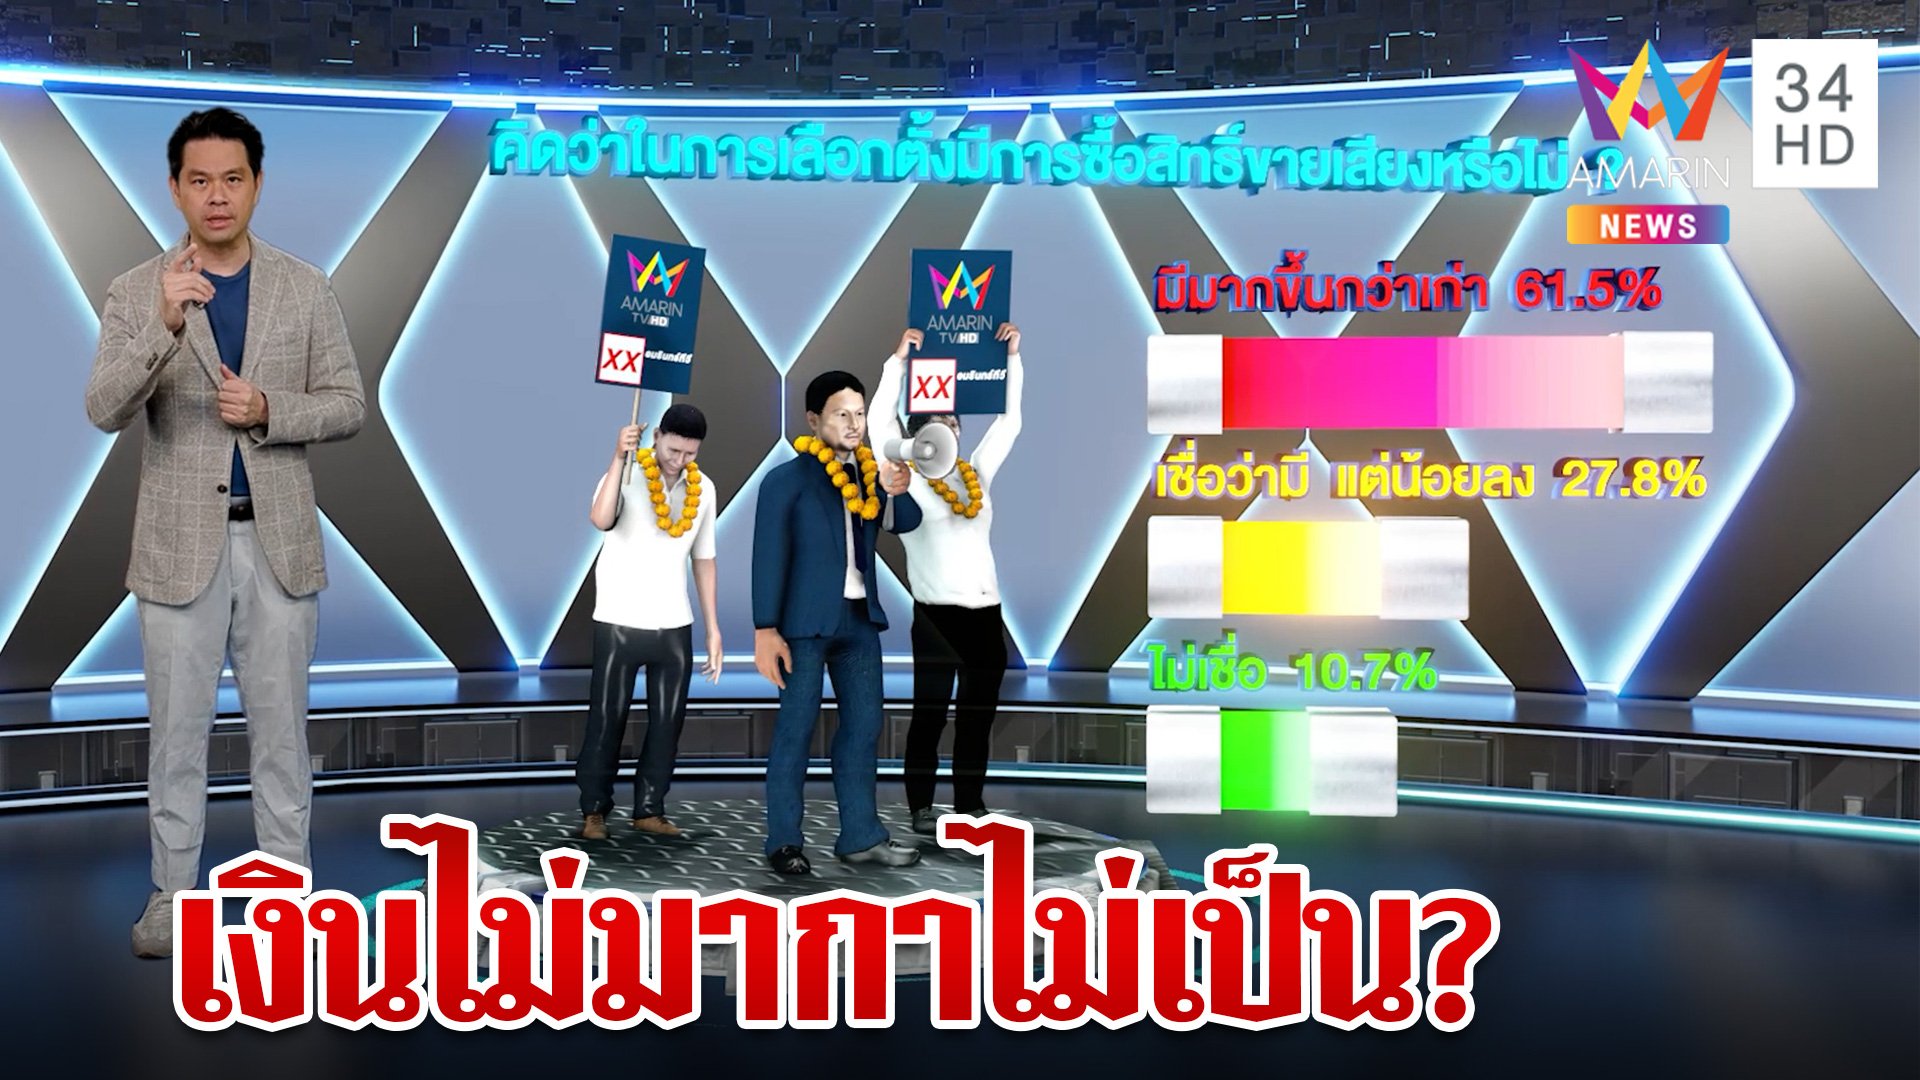 เลือกตั้ง 2566 คนไทยยังเชื่อ? มีการซื้อสิทธิขายเสียง | ทุบโต๊ะข่าว | 10 พ.ค. 66 | AMARIN TVHD34